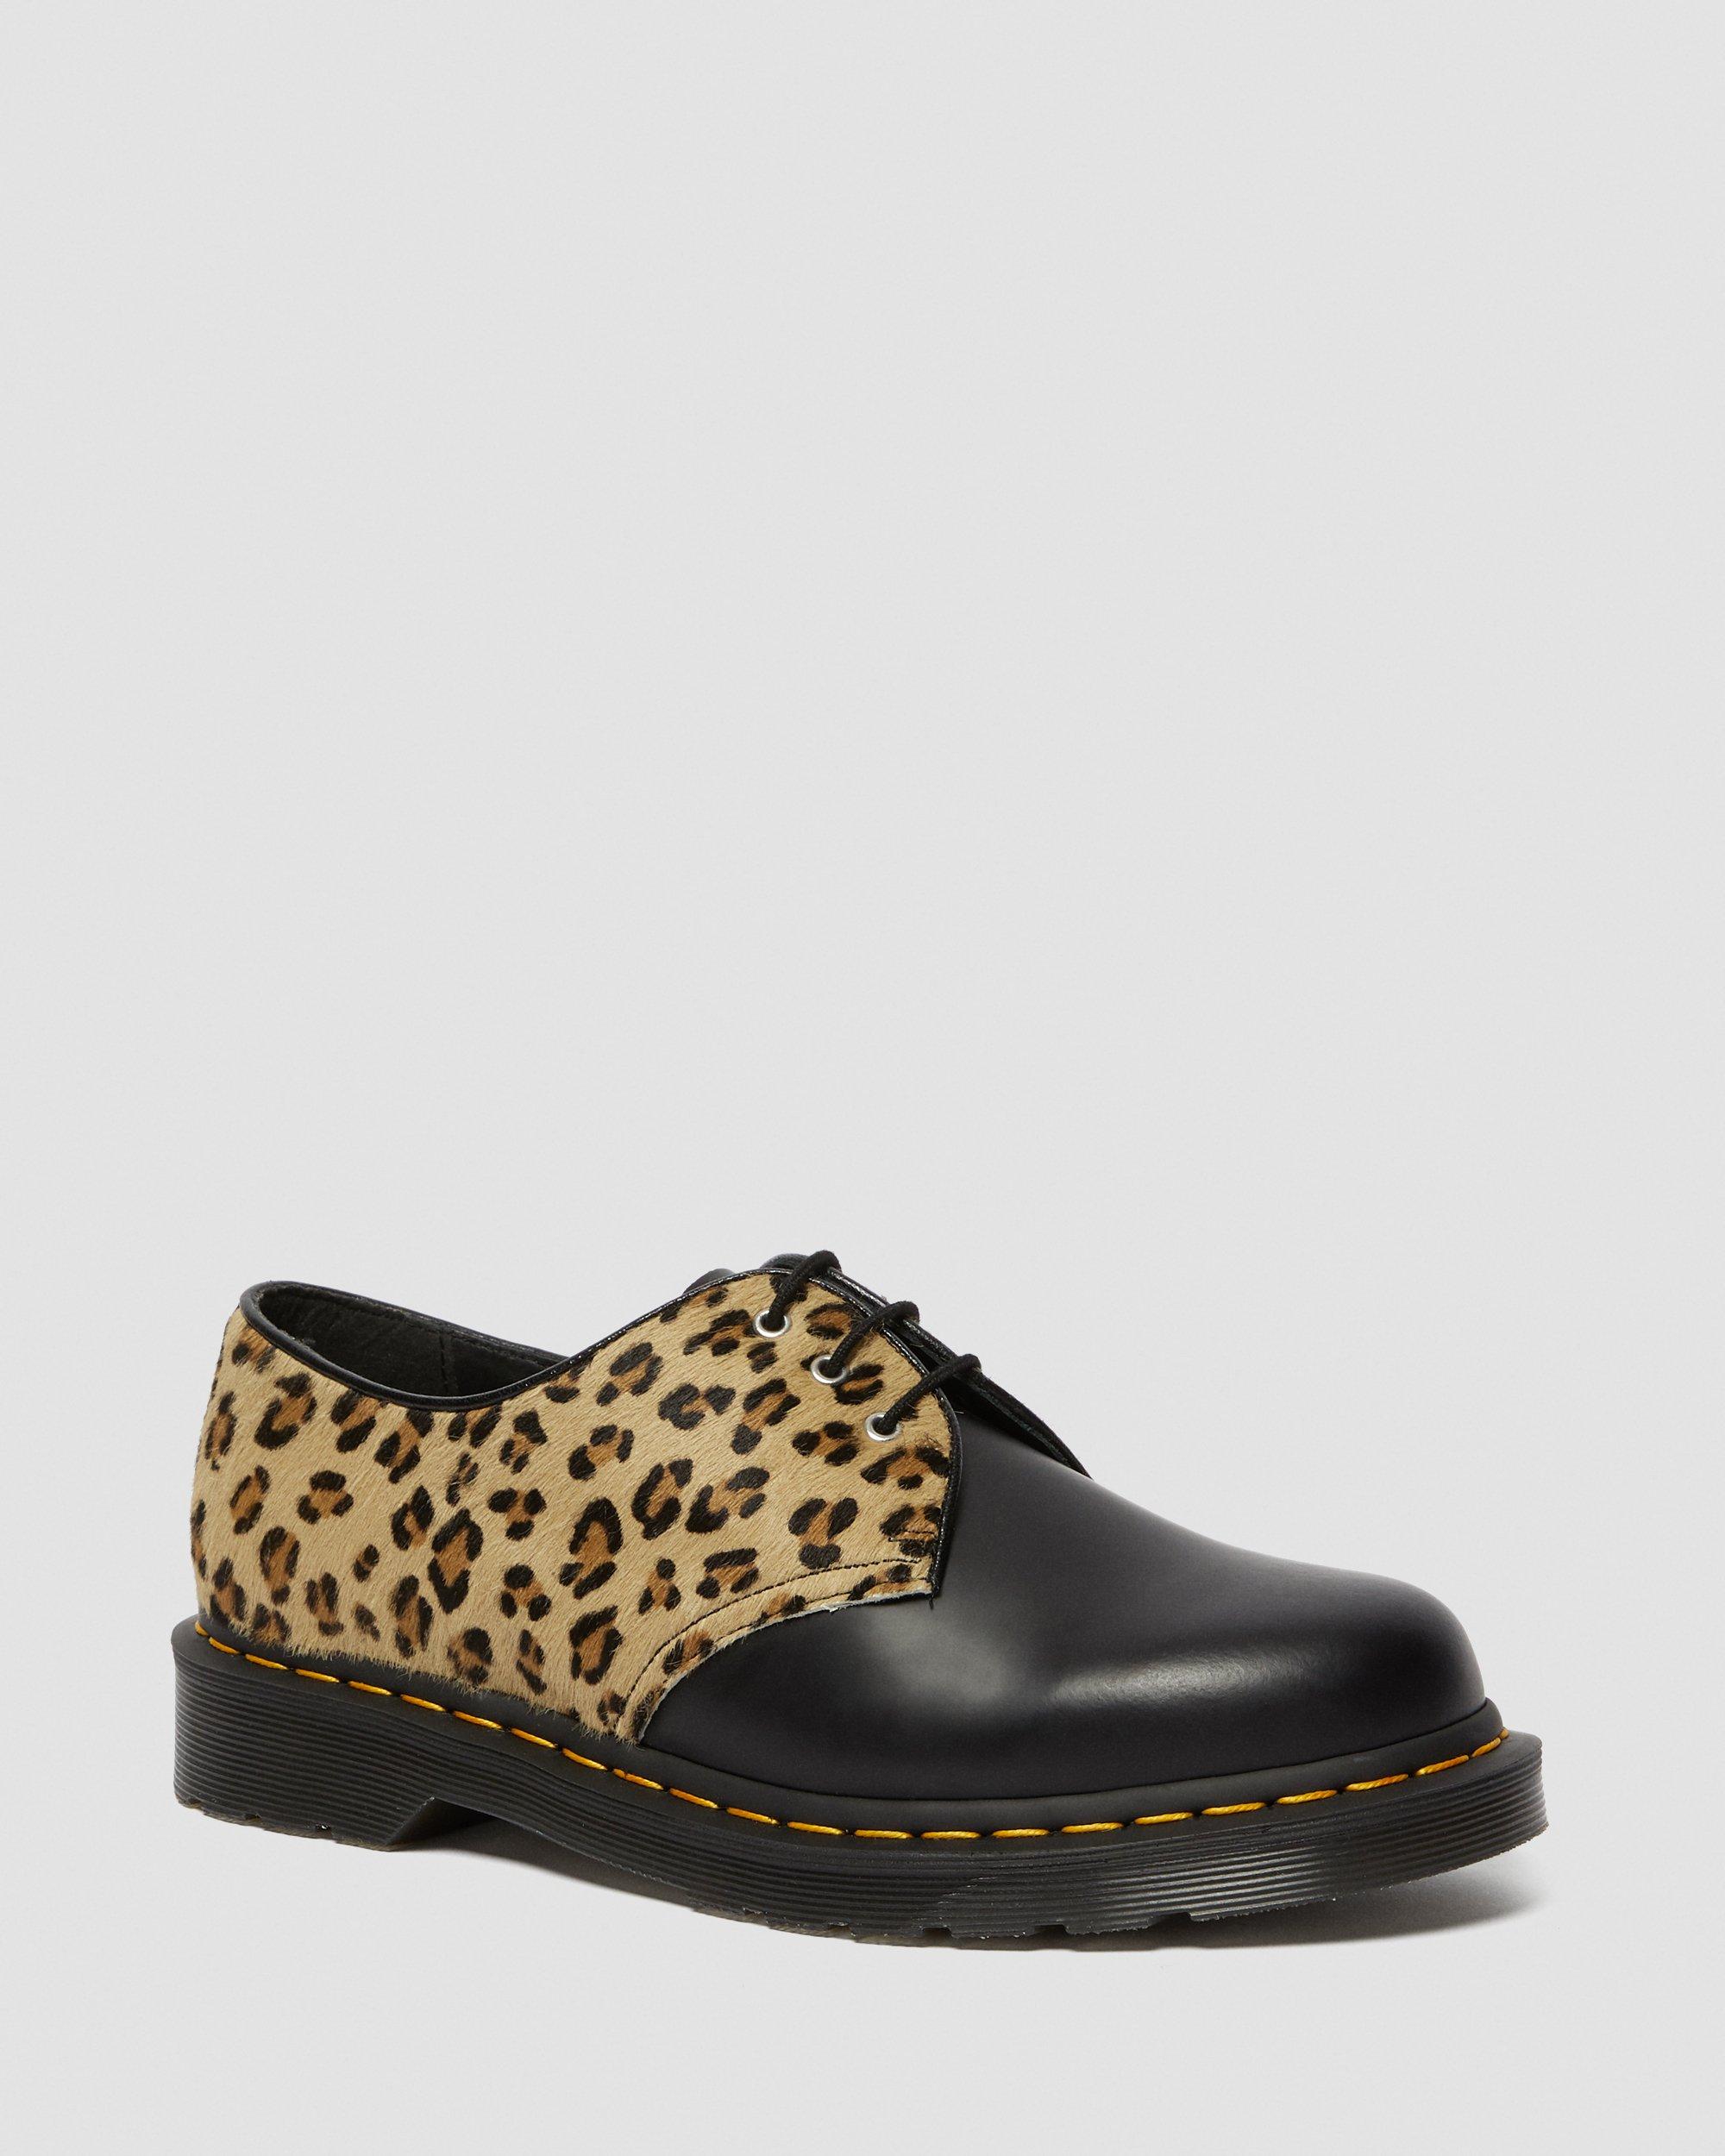 leopard skin loafers uk